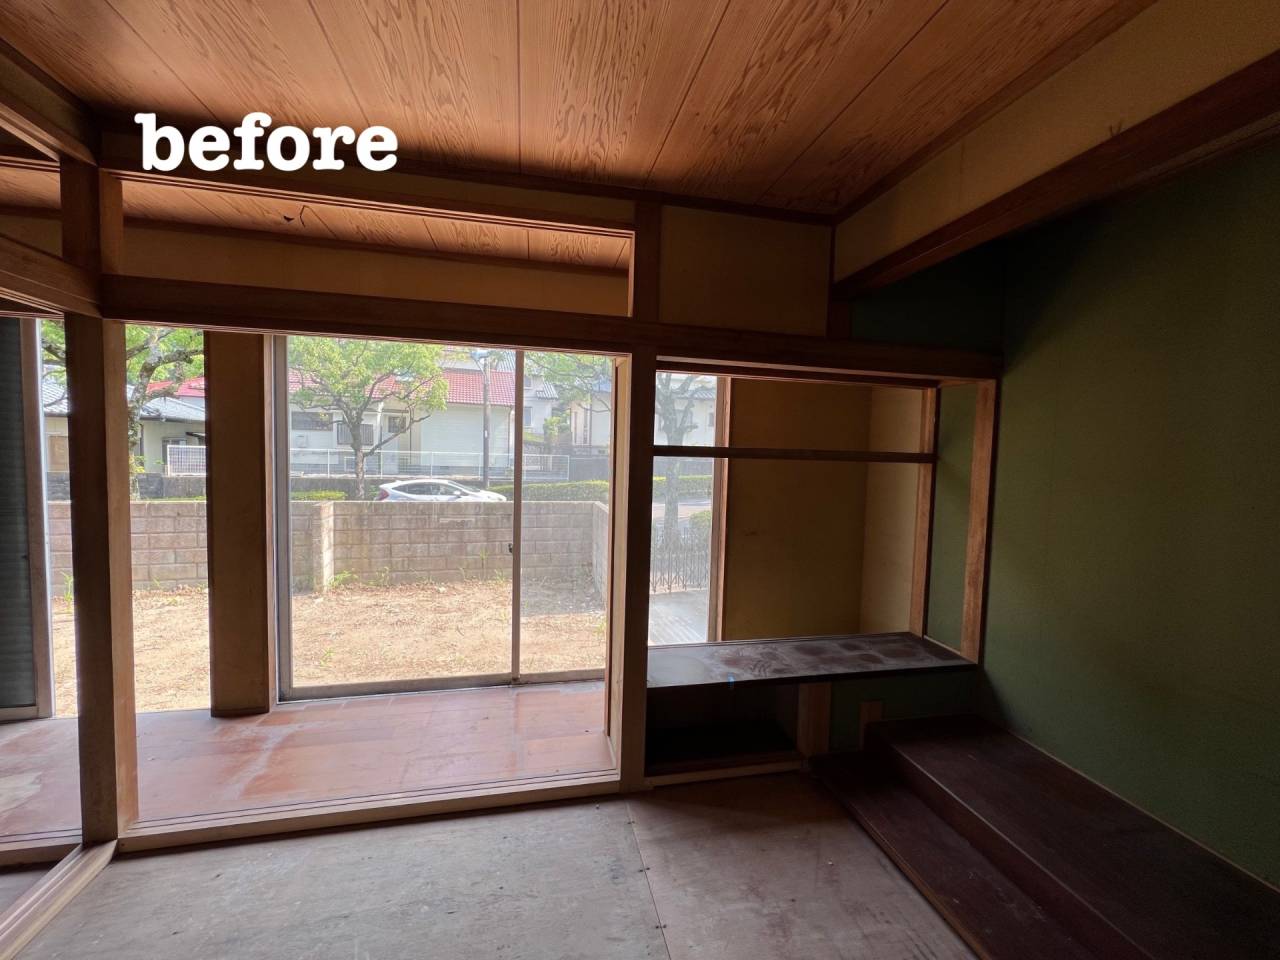 【和室の雰囲気を変えるリフォーム】宮崎市で新築・リノベーション| mikiデザインハウス